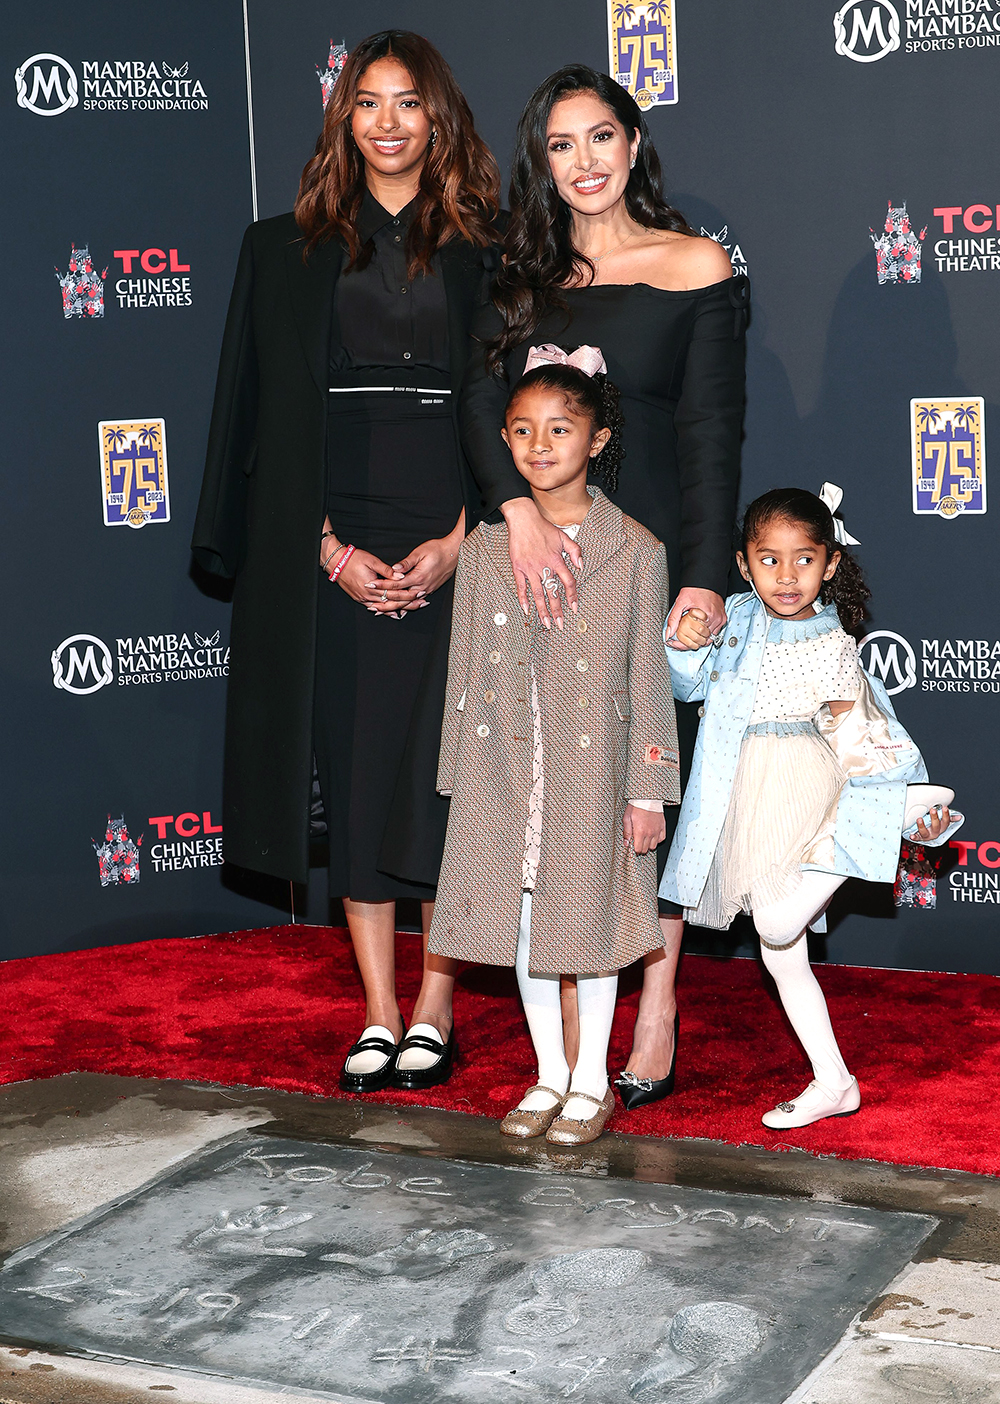 Kobe Bryant, wife Vanessa and daughters Natalia and Gianna enjoy